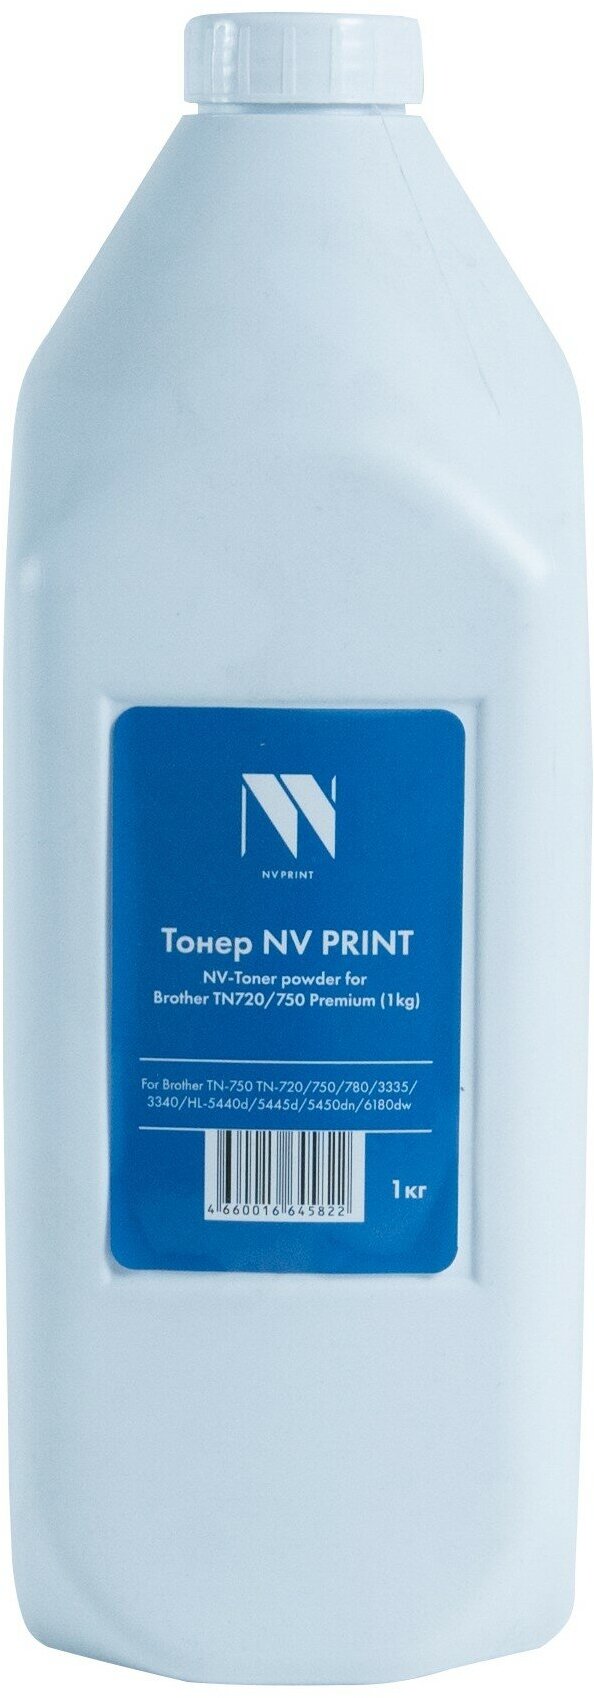 Тонер NV PRINT для Brother TN720/750 Premium (TN-3330, TN-3380, TN-720, TN-750, TN-780) (1кг)